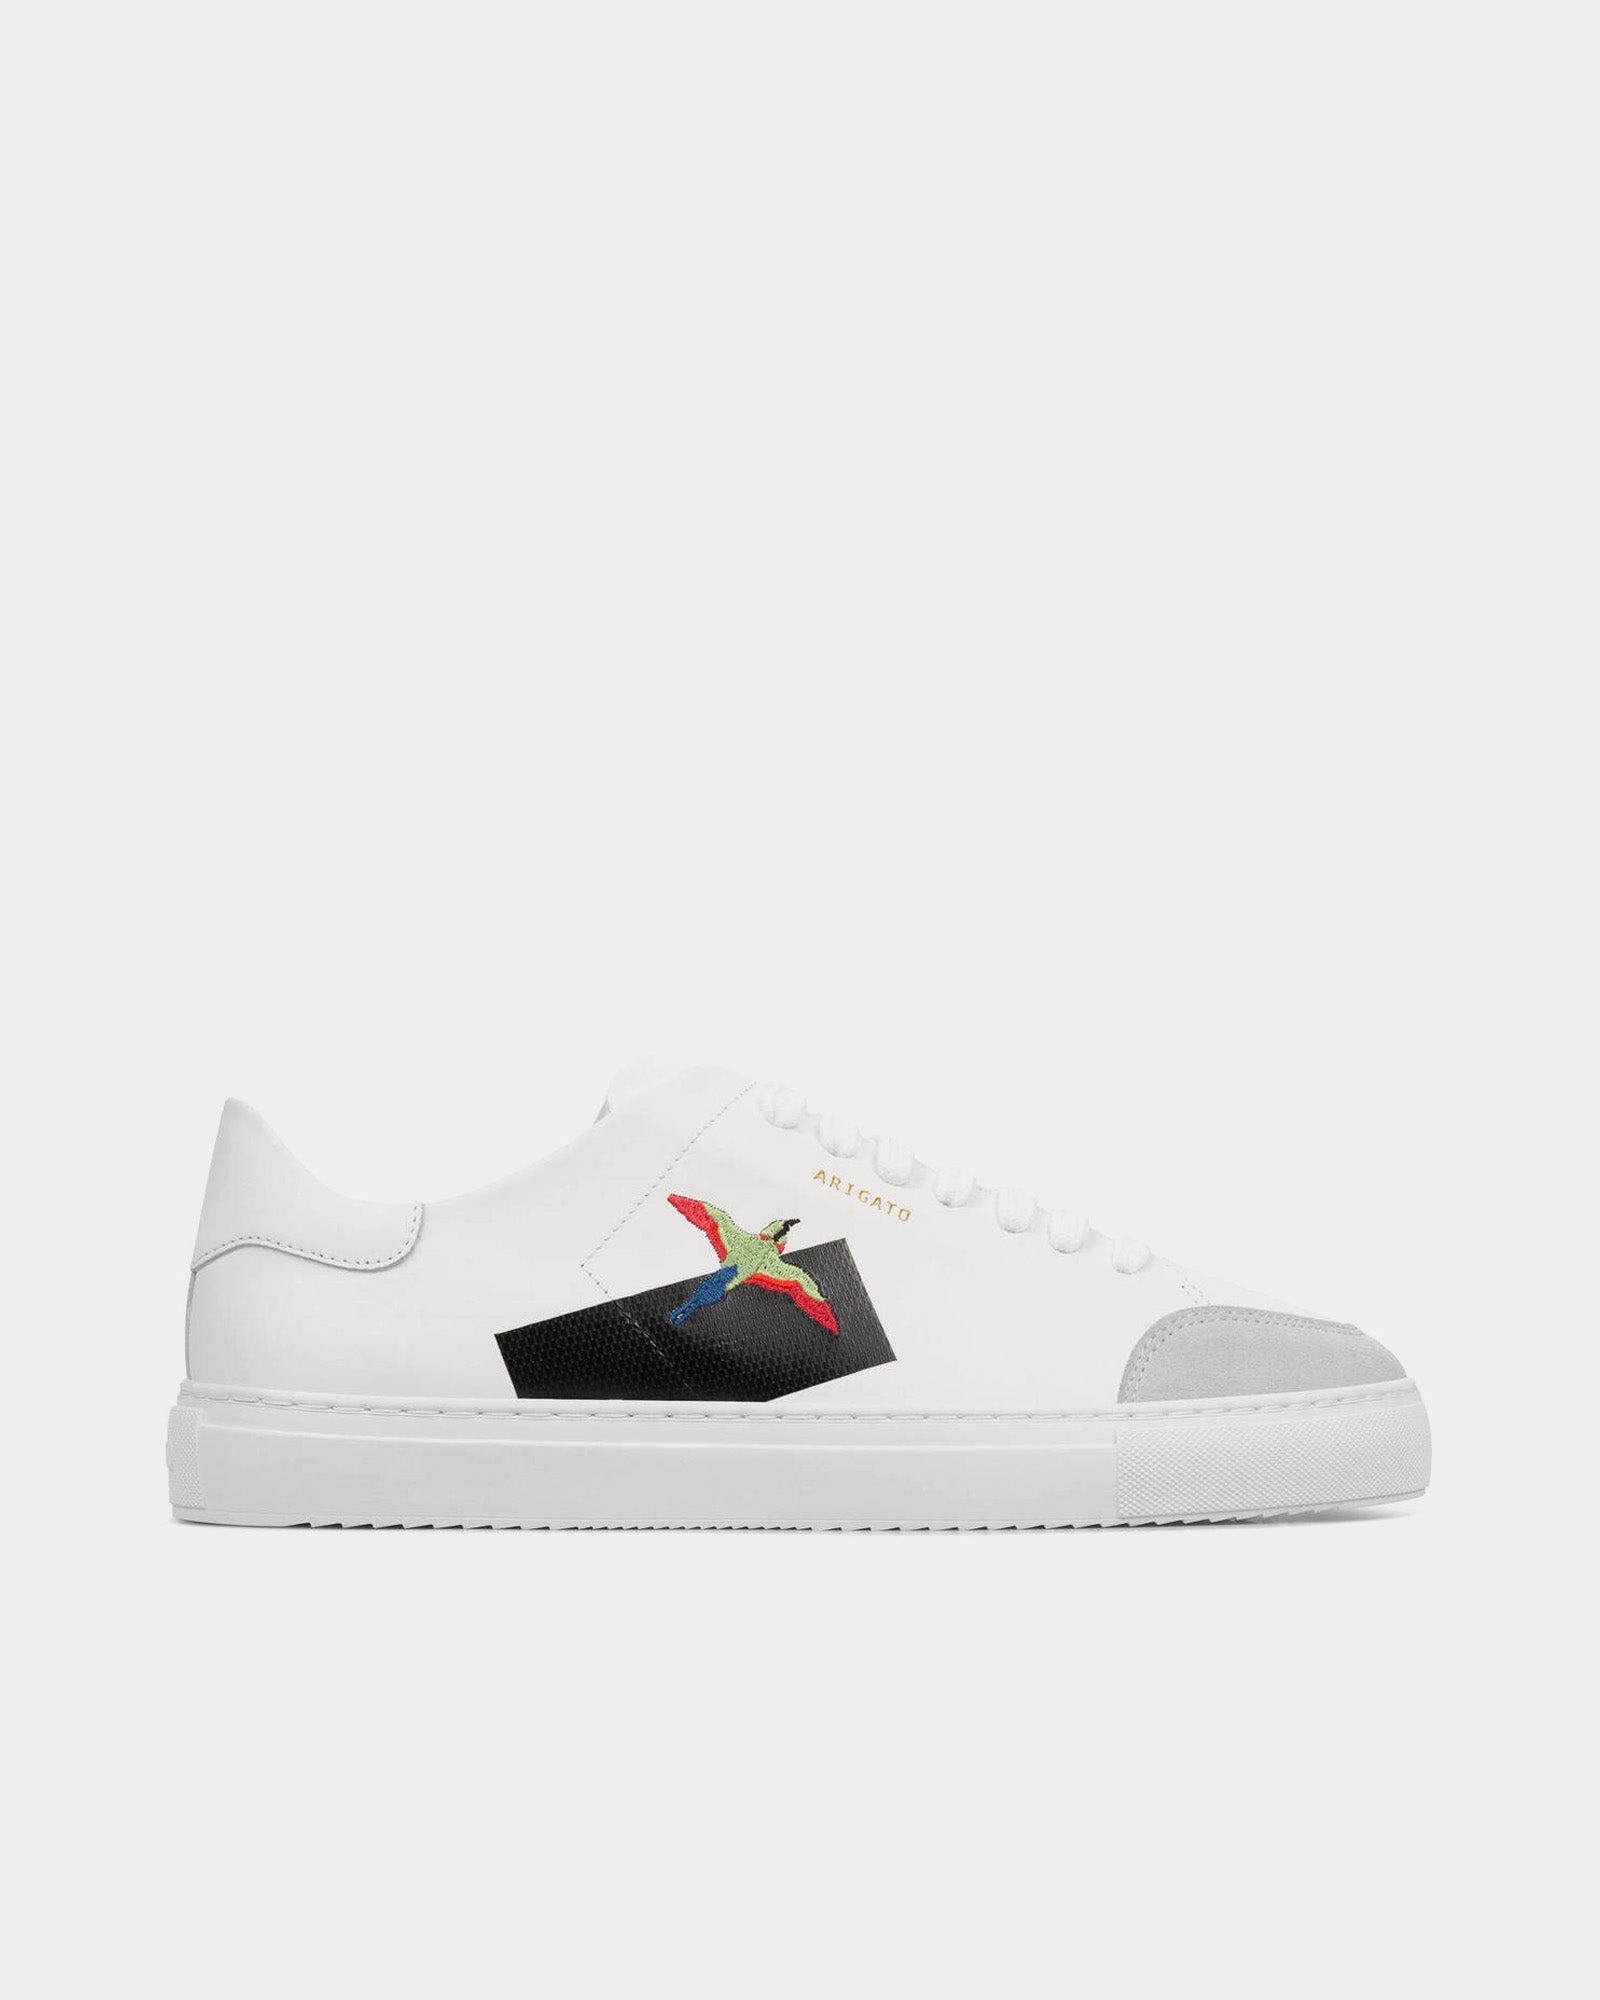 Axel Arigato - Clean 90 Bird White / White Low Top Sneakers